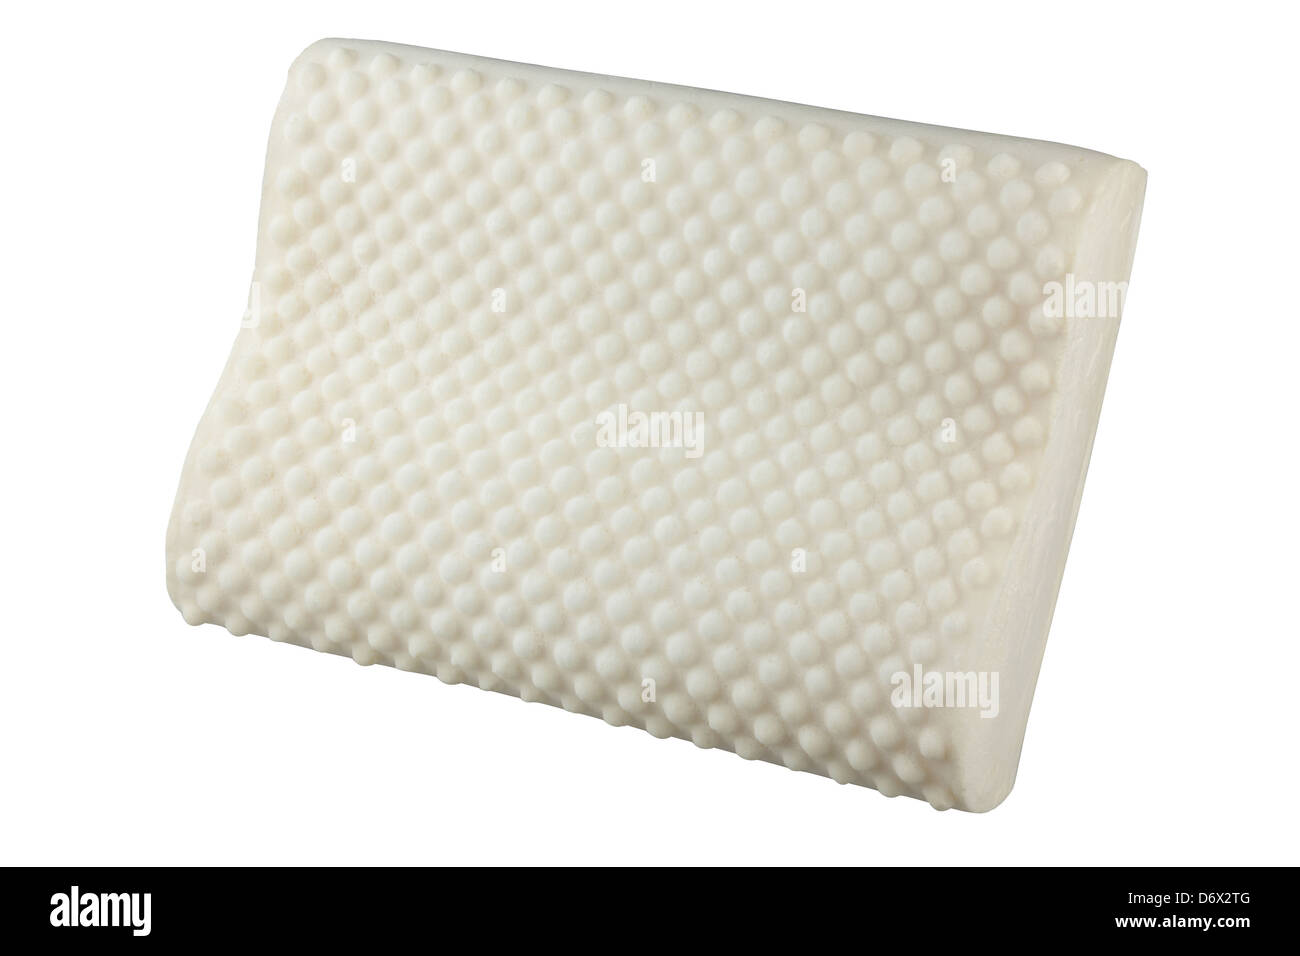 Lattice morbido materiale naturale all'interno del cuscino per proteggere acaro, polvere e sostenere il vostro collo Foto Stock